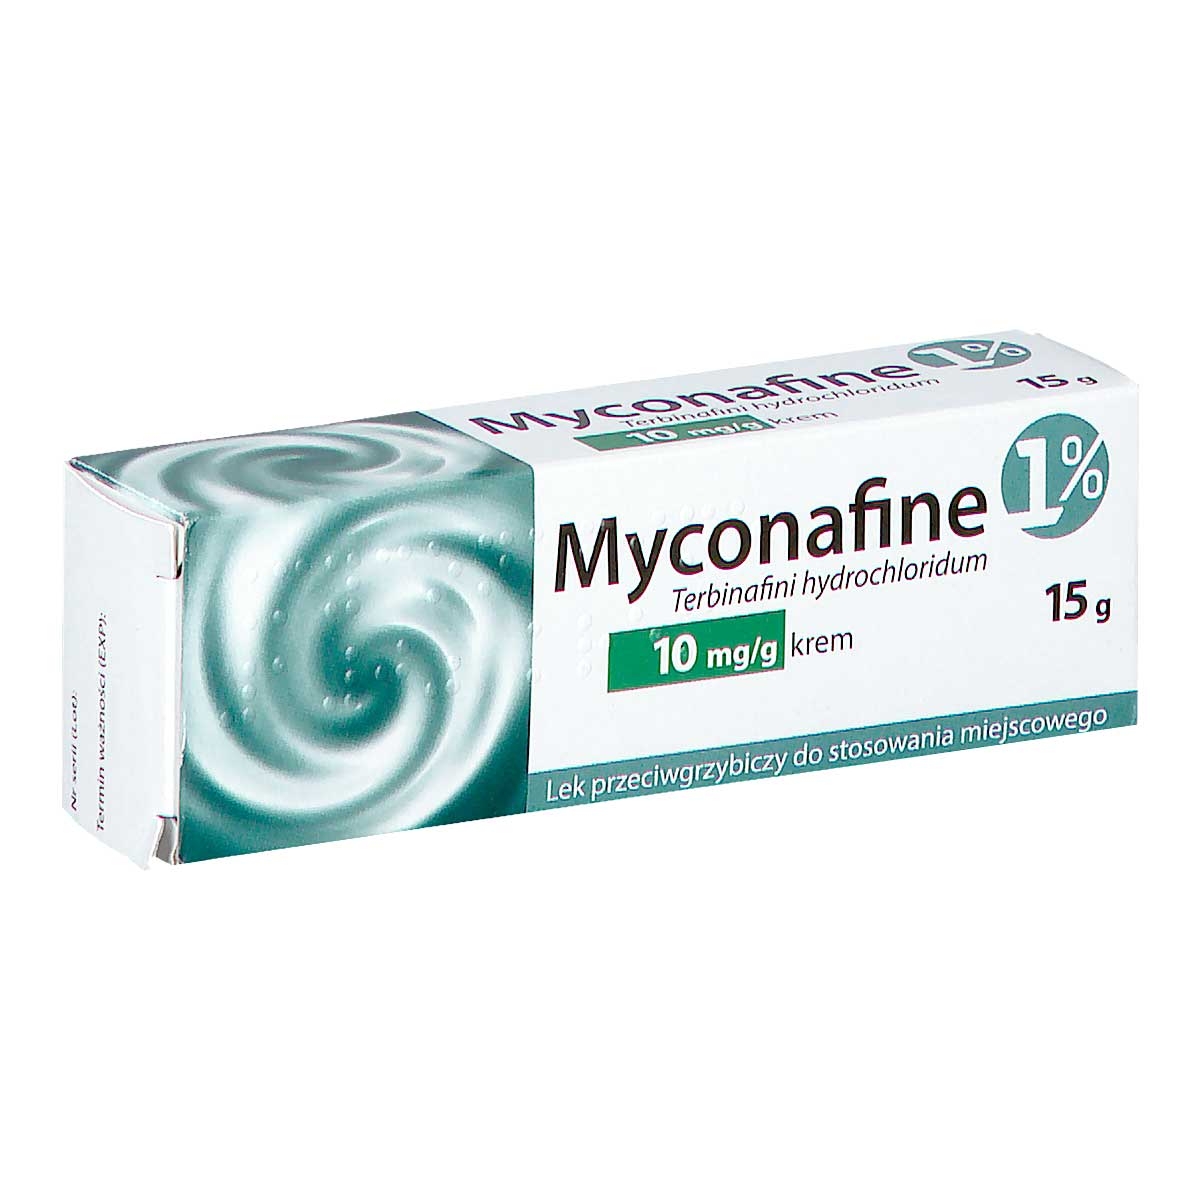 myconafine 1% 15 g